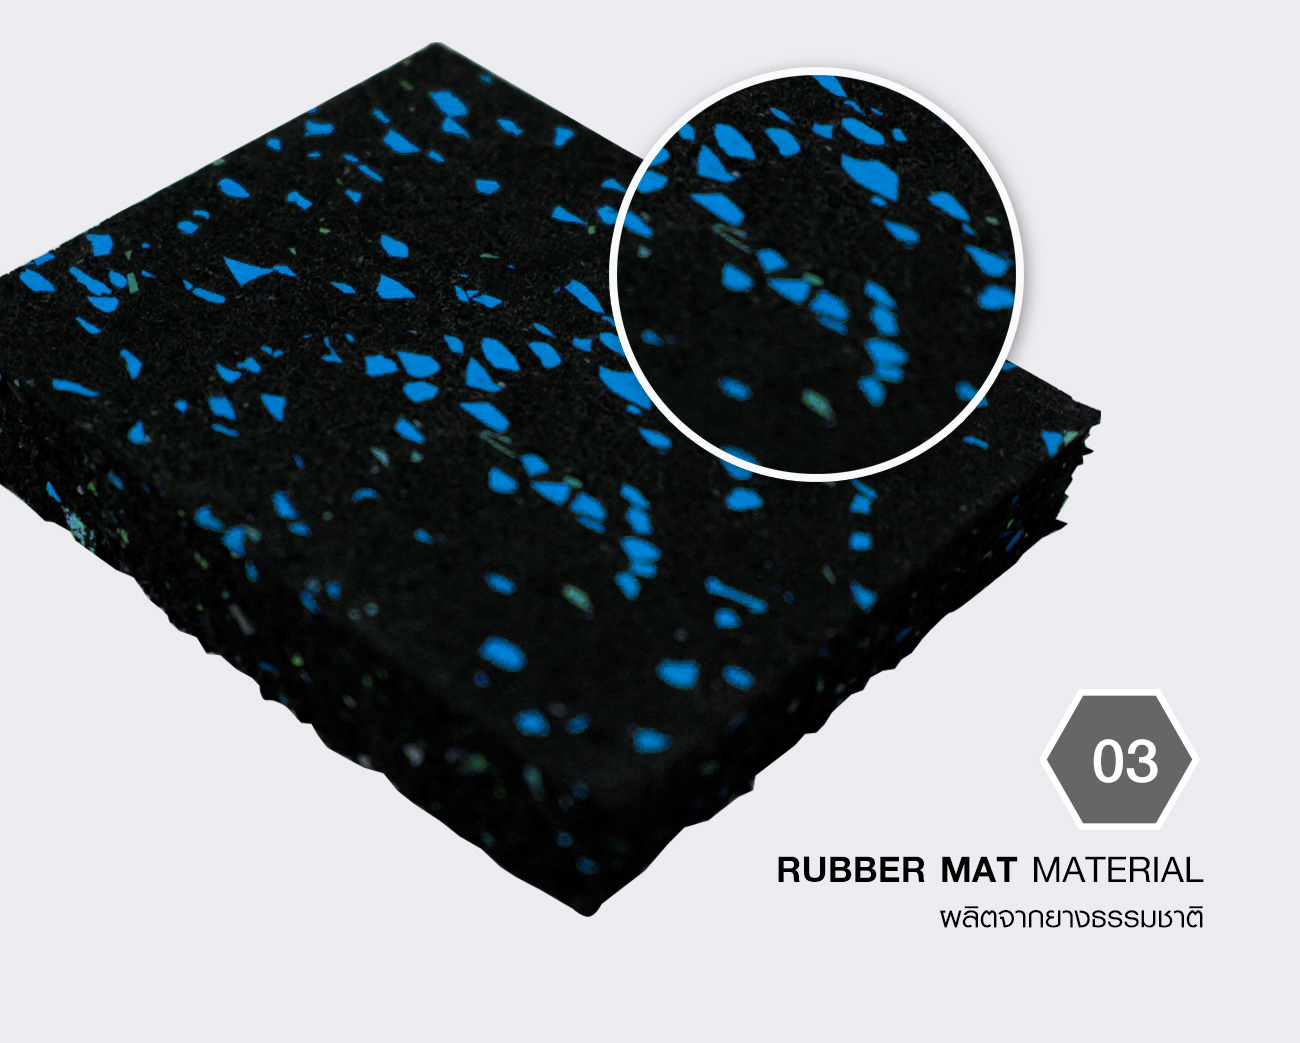 แผ่นยางปูพื้นฟิตเนส (แบบแผ่น) หนา 15 มิลลิเมตร สีฟ้า Rubber Gym Flooring Tile 15mm. Blue MSA03